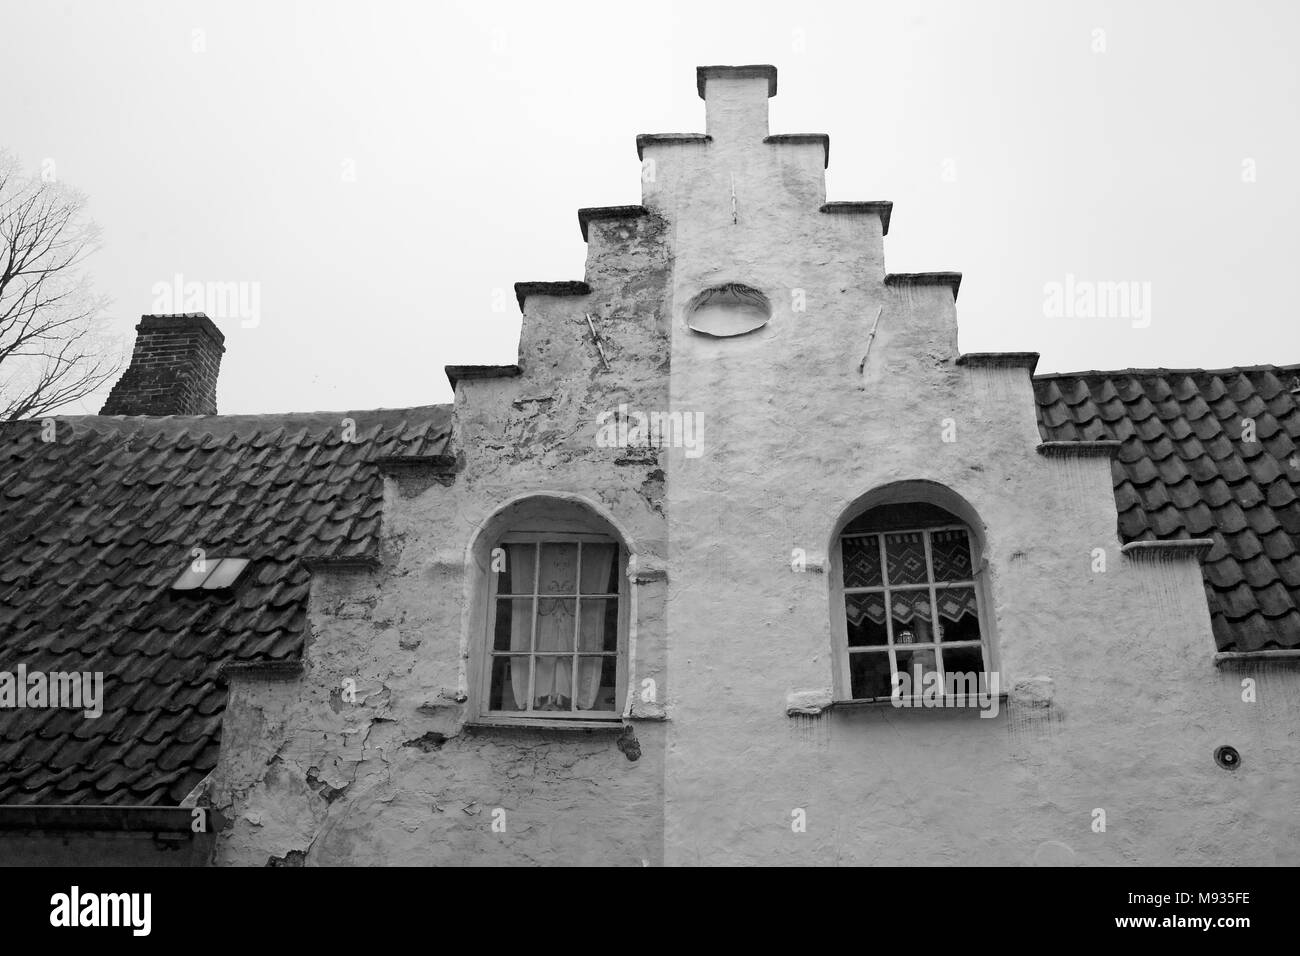 Maisons traditionnelles à pignons, Walstraat, Brugge, Flandre Occidentale, Belgique. Version noir et blanc Banque D'Images